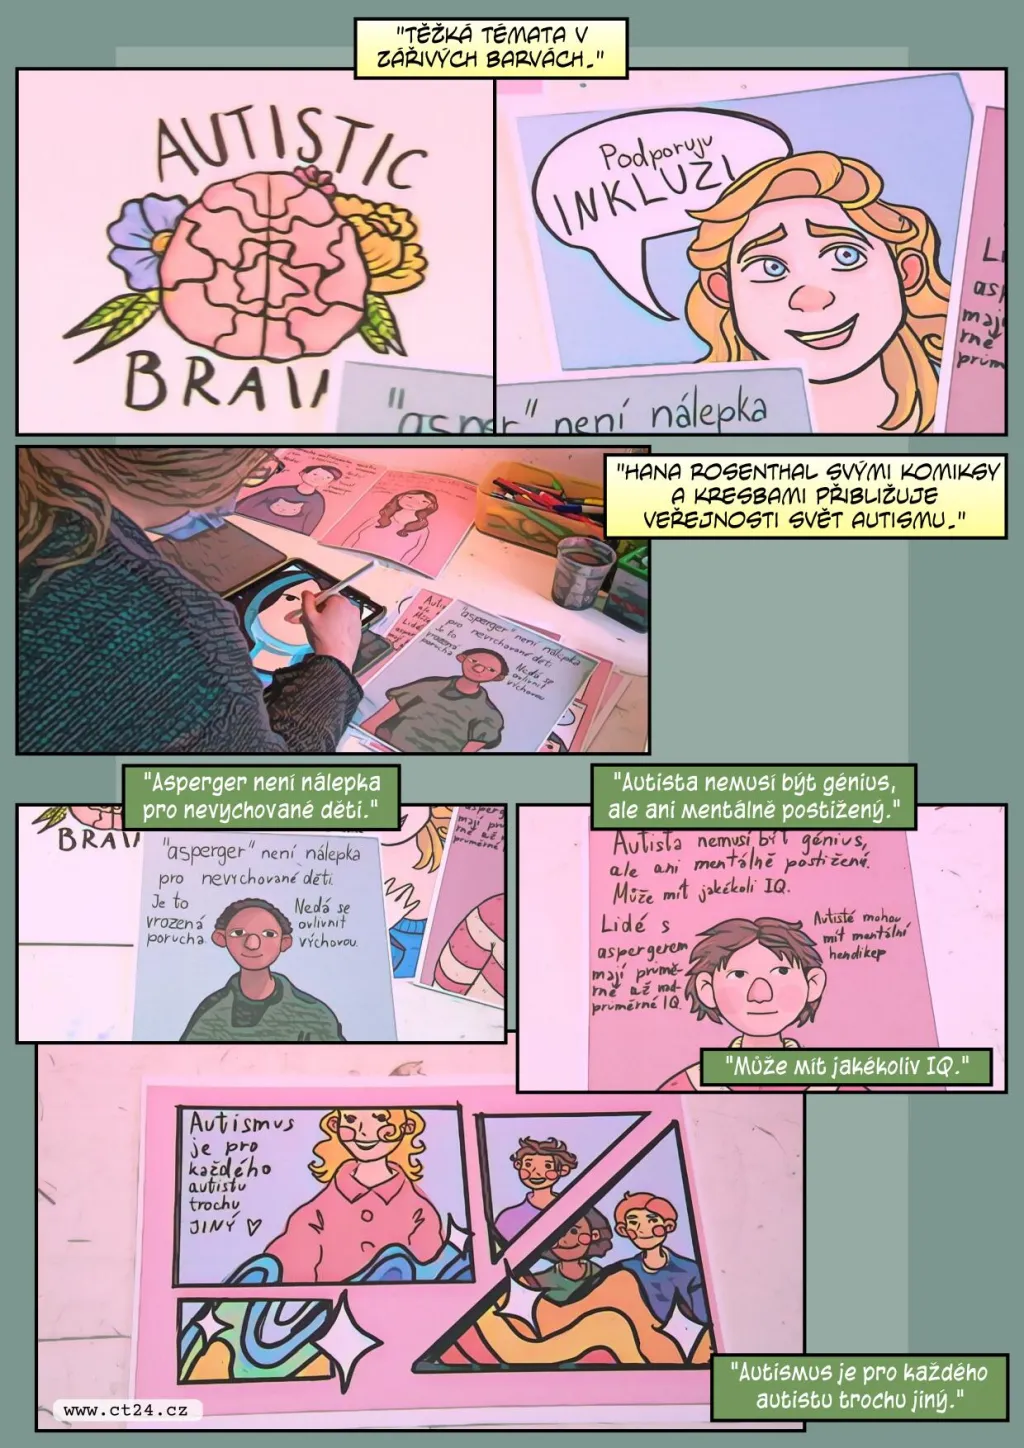 Mladá kreslířka se pomocí komiksu snaží vyvracet předsudky o autismu